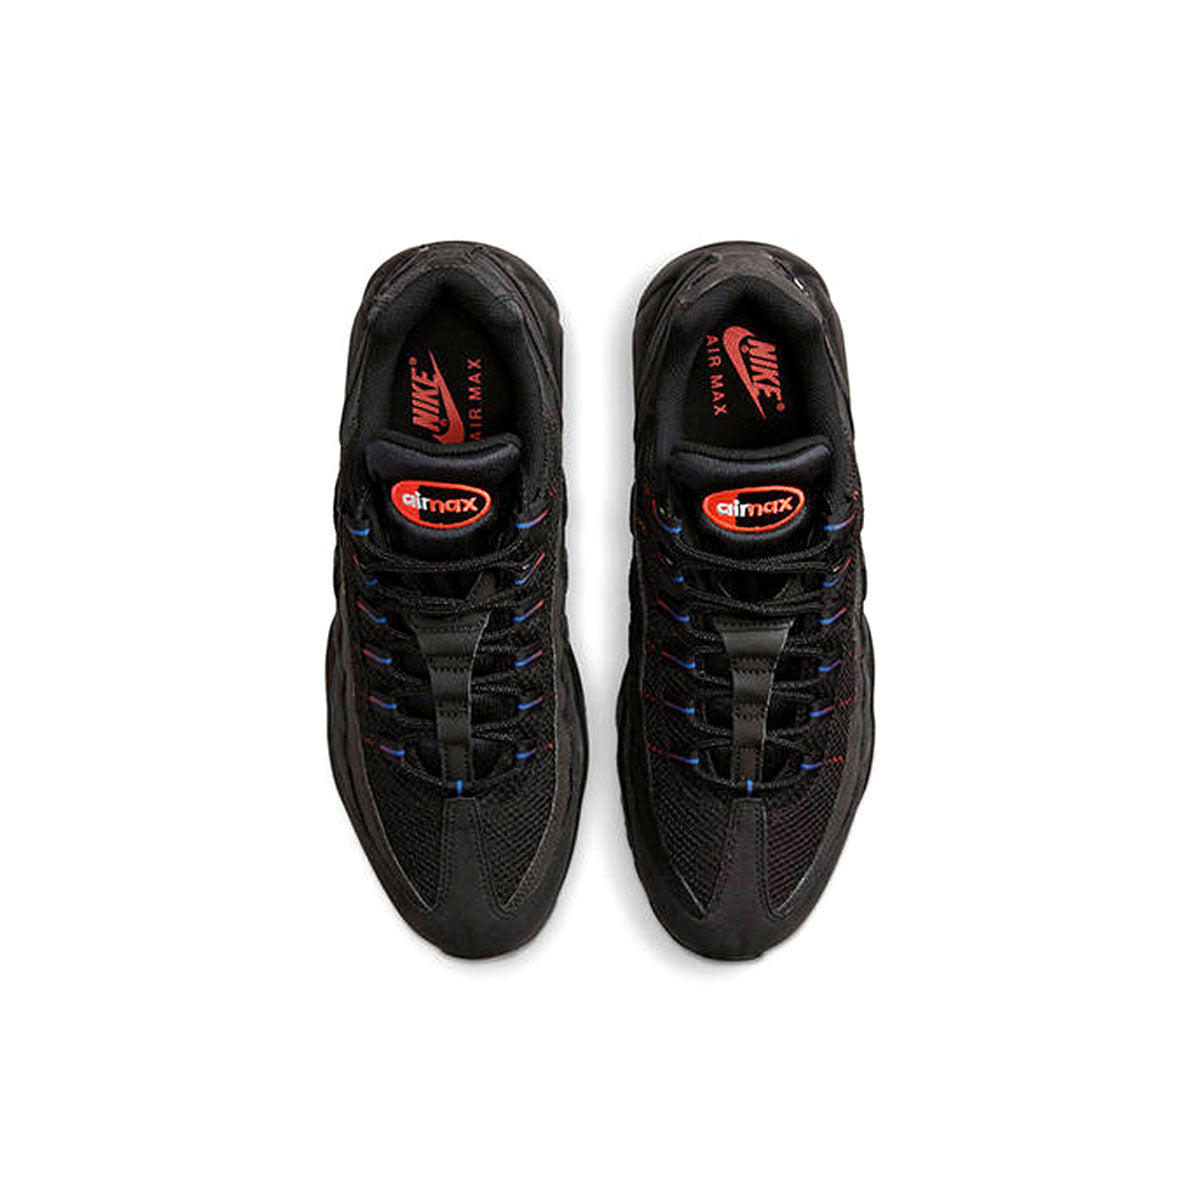 Nike Air Max 95 Black Reflective Volt Men's